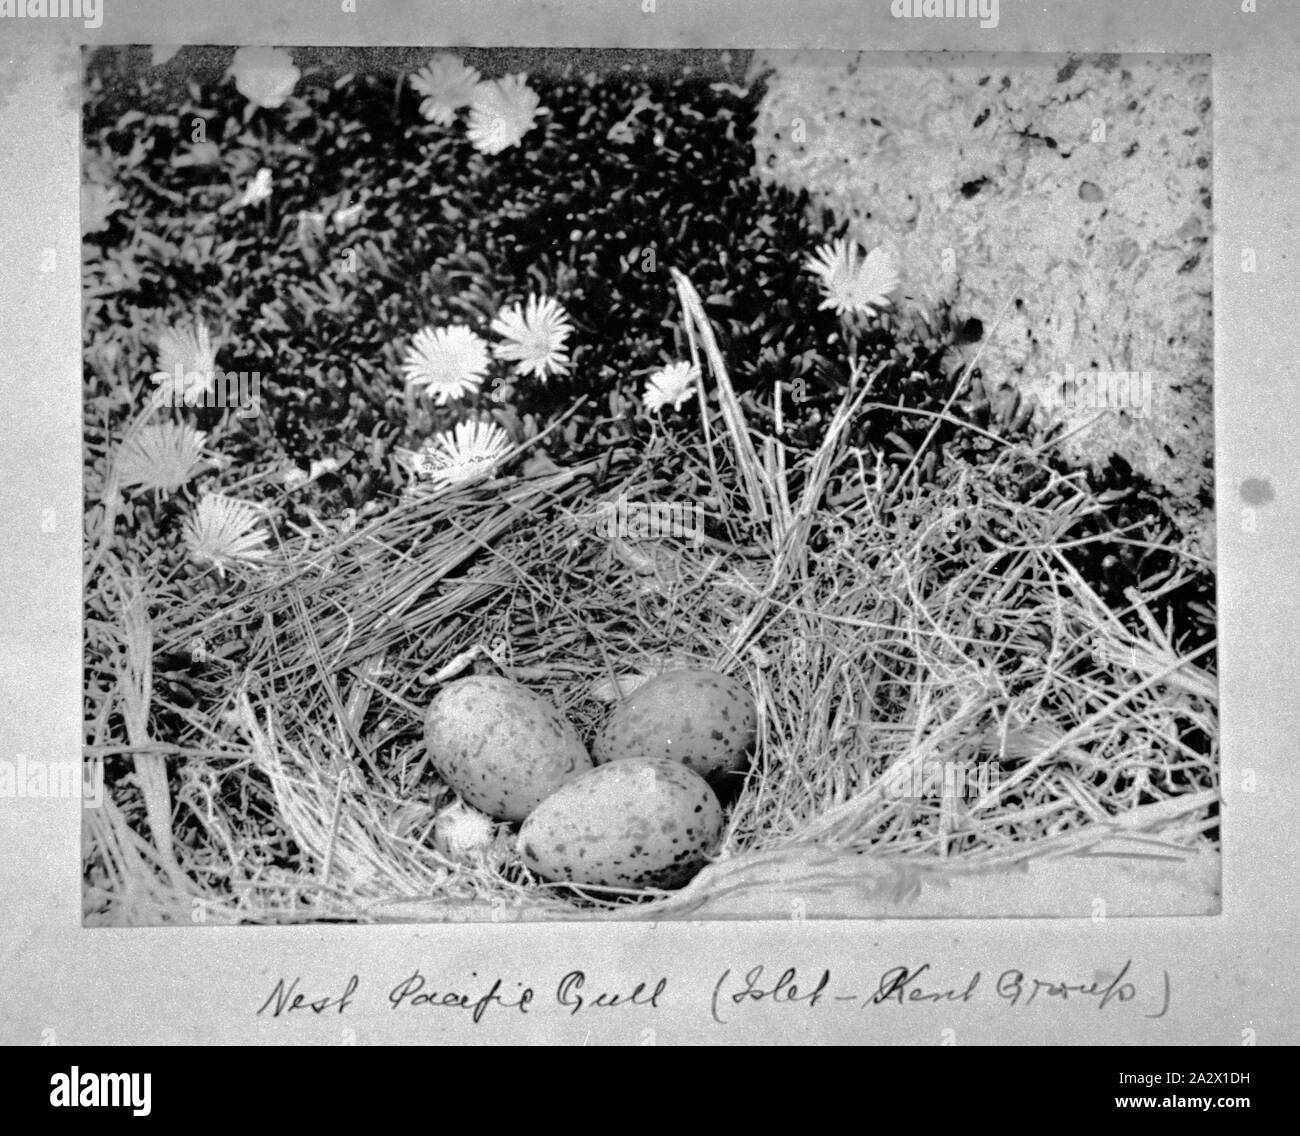 Fotografie - von A.J. Campbell, Kent Island Group, Bass Strait, Tasmanien, ca. 1890, das Nest eines pazifischen Möwe mit drei Eiern. Es ist eine blühende Pflanze im Hintergrund Stockfoto